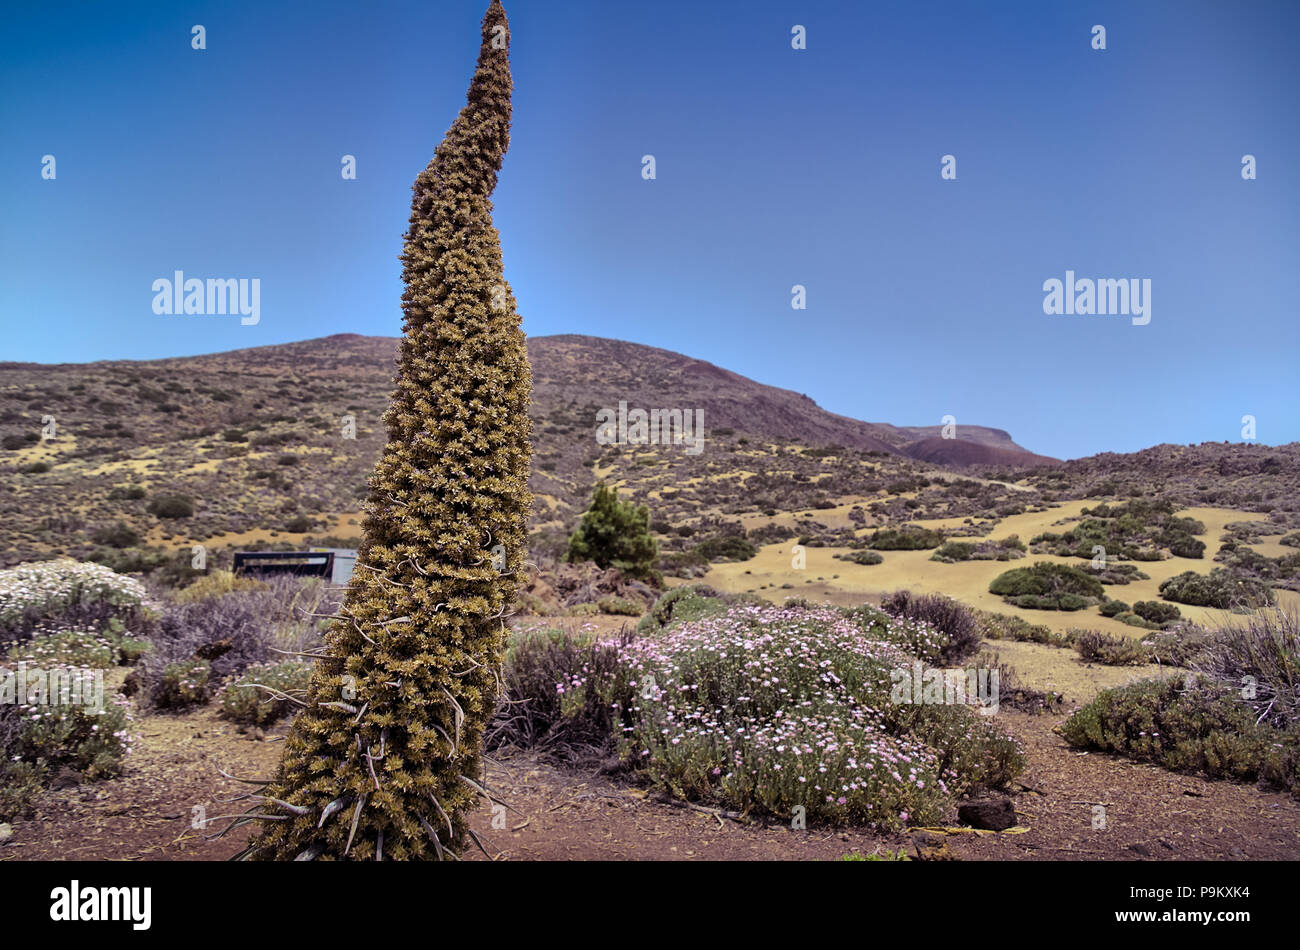 La cuspide prominente infiorescenza di verde (Tajinaste wilpretii echium, Tenerife bugloss) nell'arido paesaggio vulcanico del Monte Teide fuori stagione Foto Stock